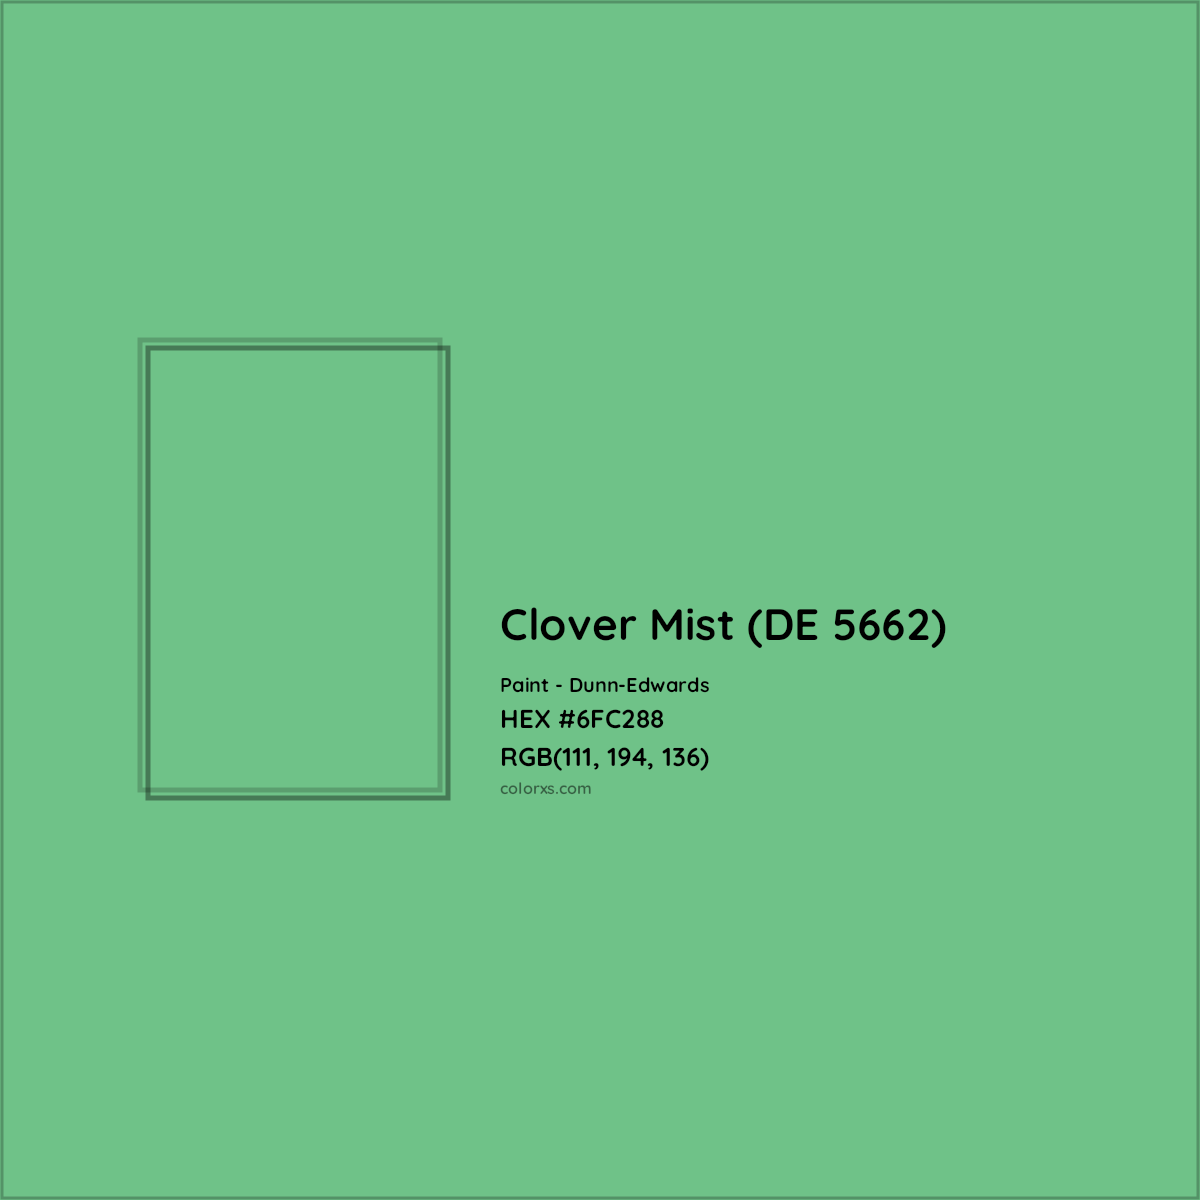 HEX #6FC288 Clover Mist (DE 5662) Paint Dunn-Edwards - Color Code